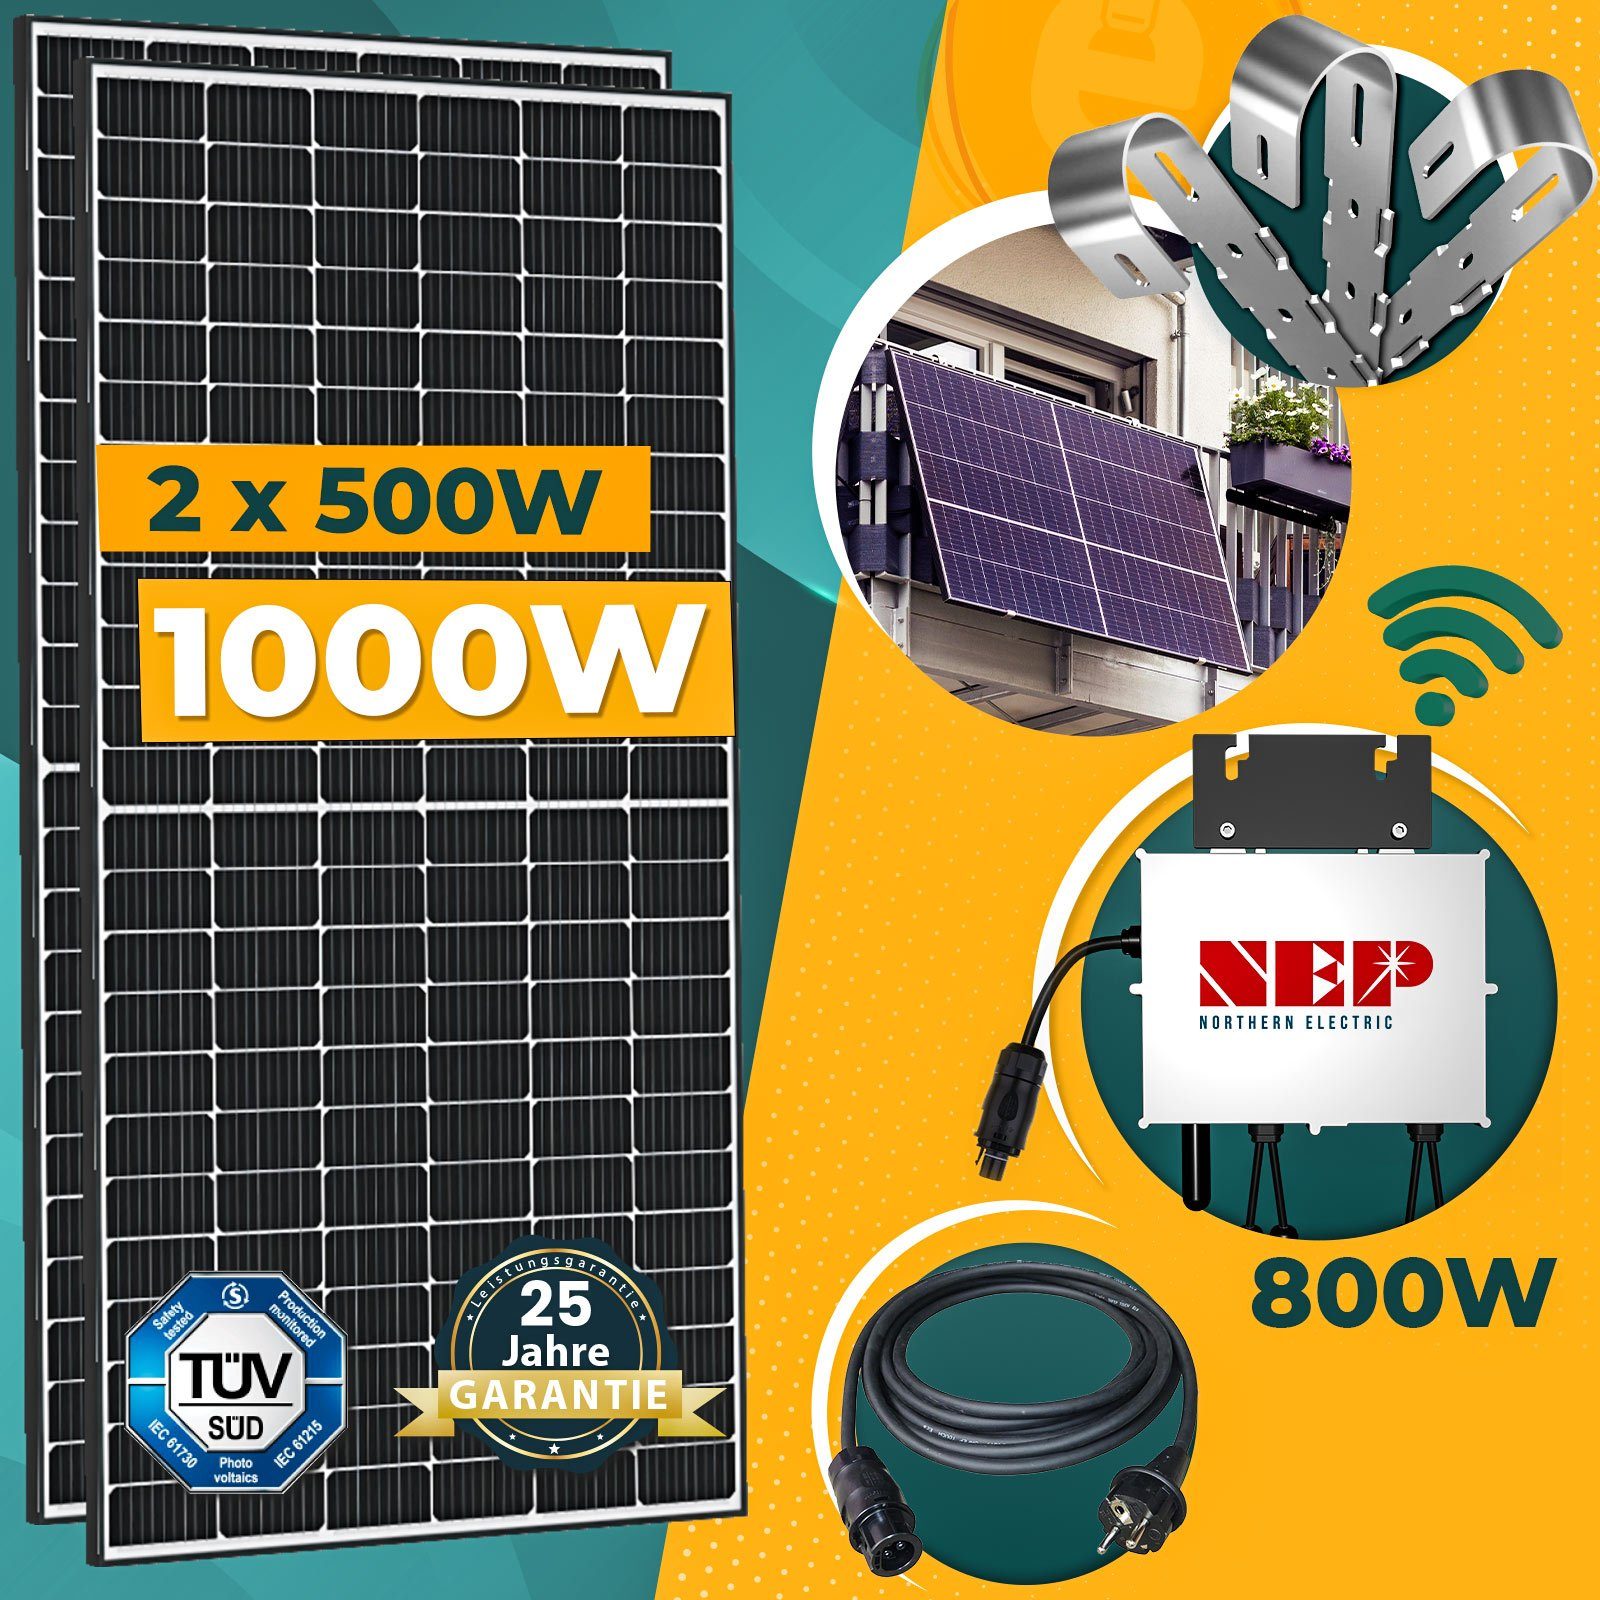 https://i.otto.de/i/otto/8e53d48b-eb13-5ab1-8862-9025814eb42c/enprovesolar-solaranlage-1000w-balkonkraftwerk-komplettset-inkl-500w-solarmodule-nep-800w-wifi-wechselrichter-10m-schuko-stecker-und-balkongelaender-rund-pv-montage.jpg?$formatz$